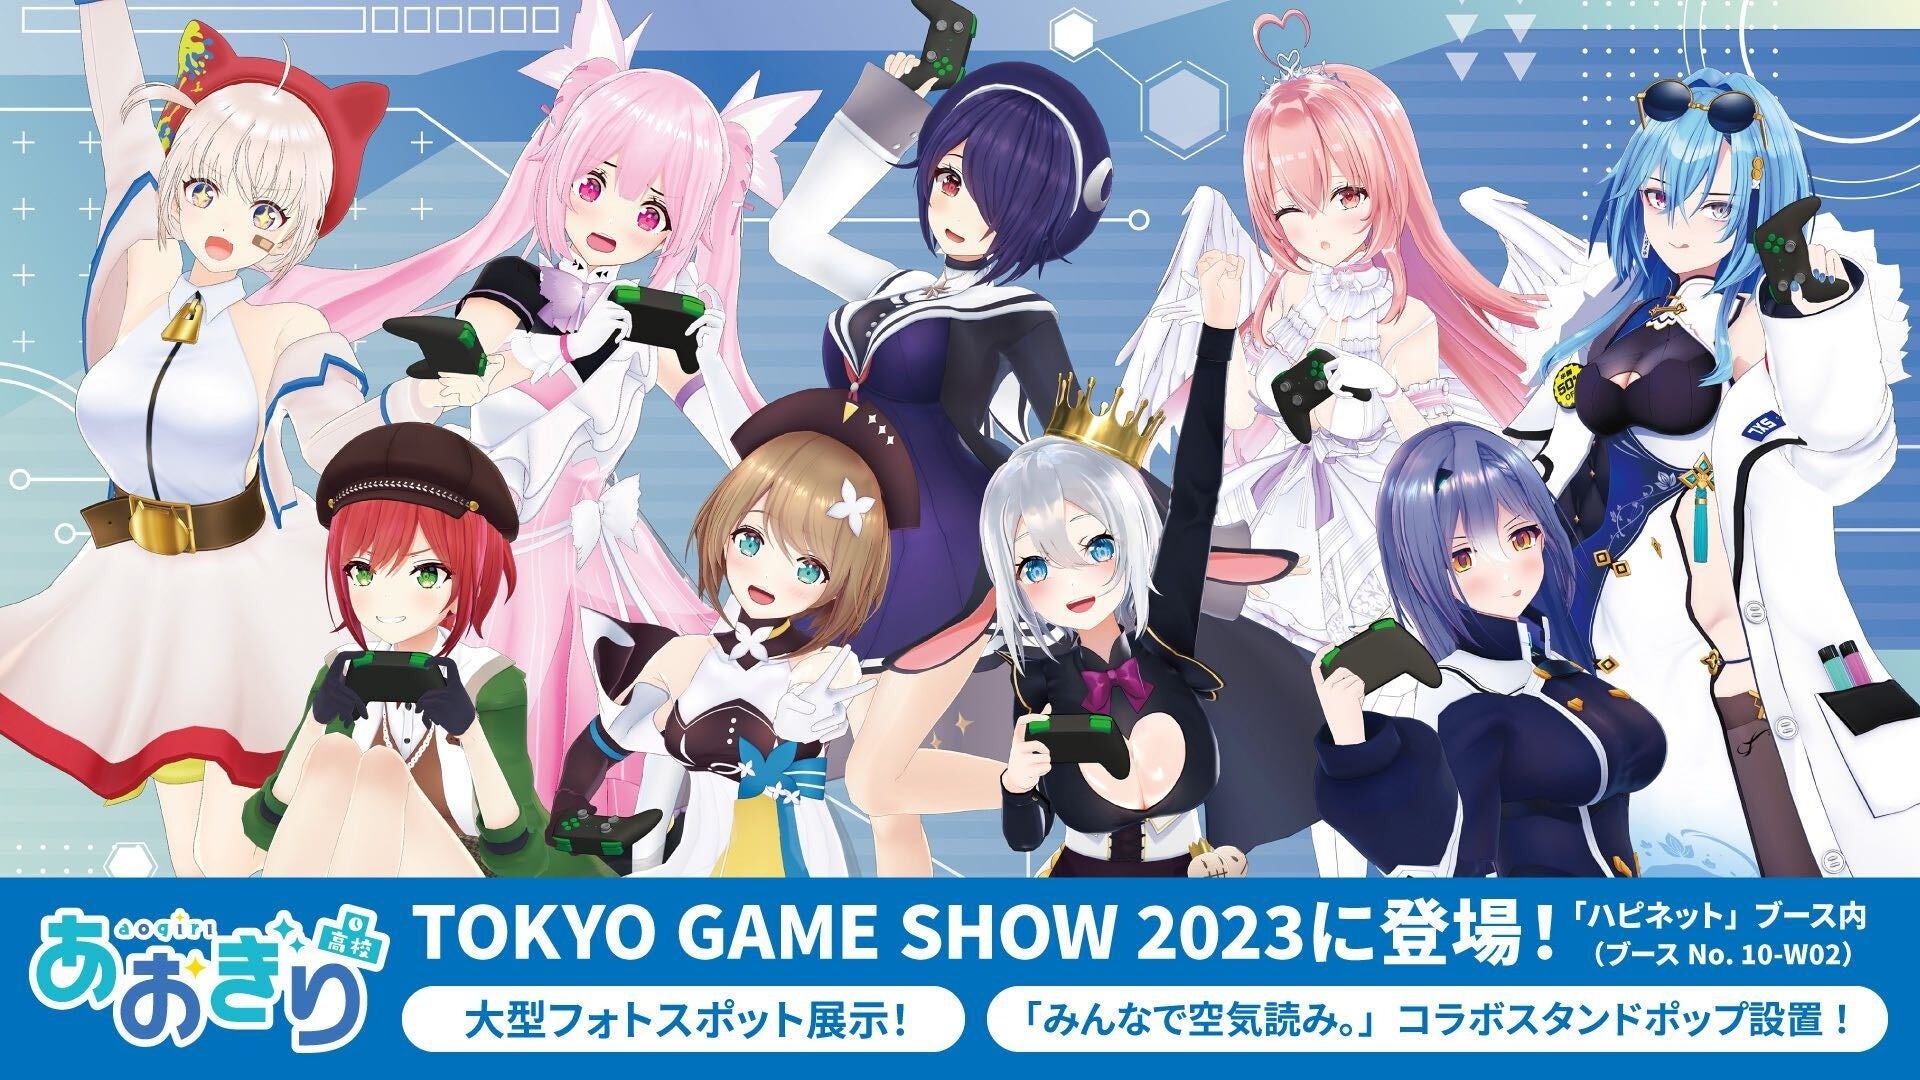 TOKYO GAME SHOW 2023「ハピネットブース」では全12ステージを開催！試遊タイトルや物販コーナーの最新情報やSNSキャンペーン情報も公開！